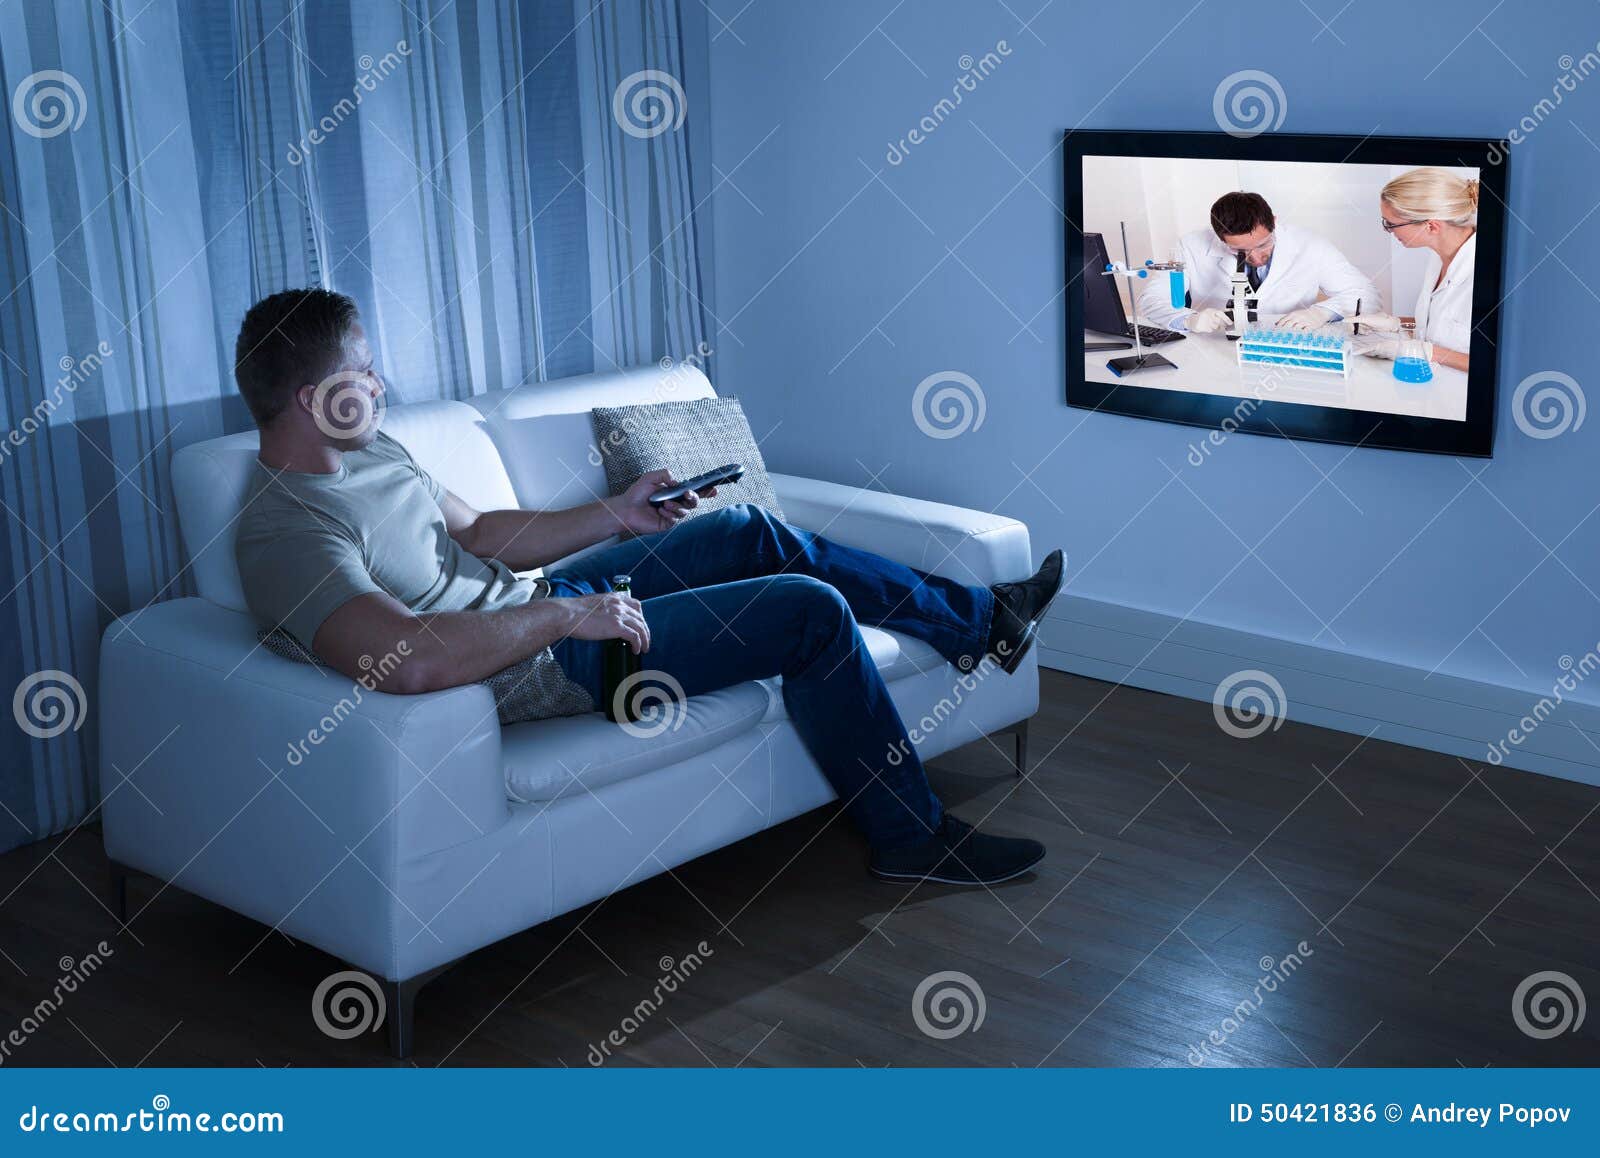 Телевизор сиди дома. Кресло перед телевизором. Человек перед телевизором. Человек сидит перед телевизором. Человек на диване перед телевизором.